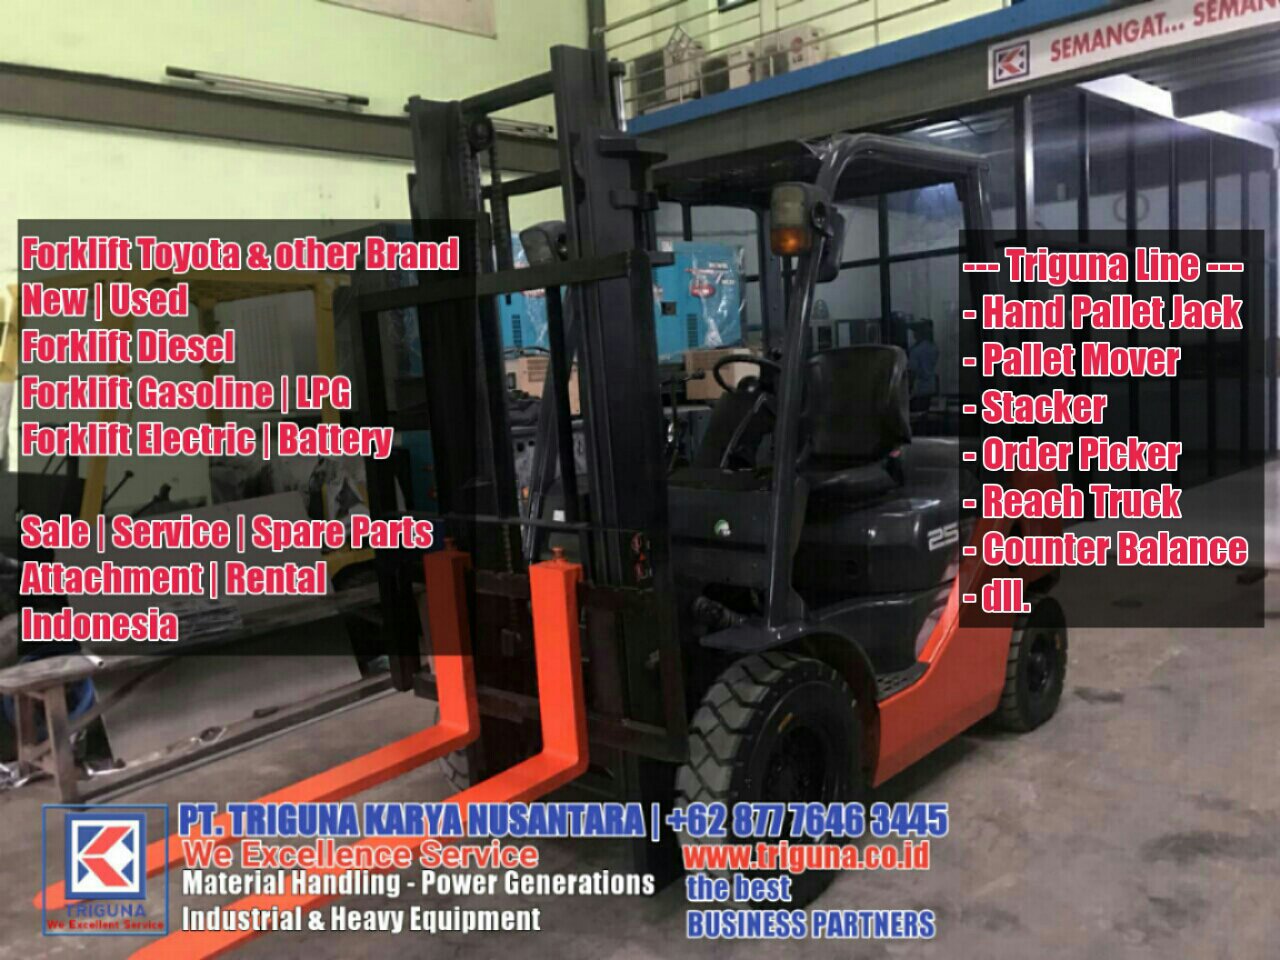 Jual Forklift Toyota Murah Bergaransi Hub 0877 7646 3445 Pt Triguna Karya Nusantara